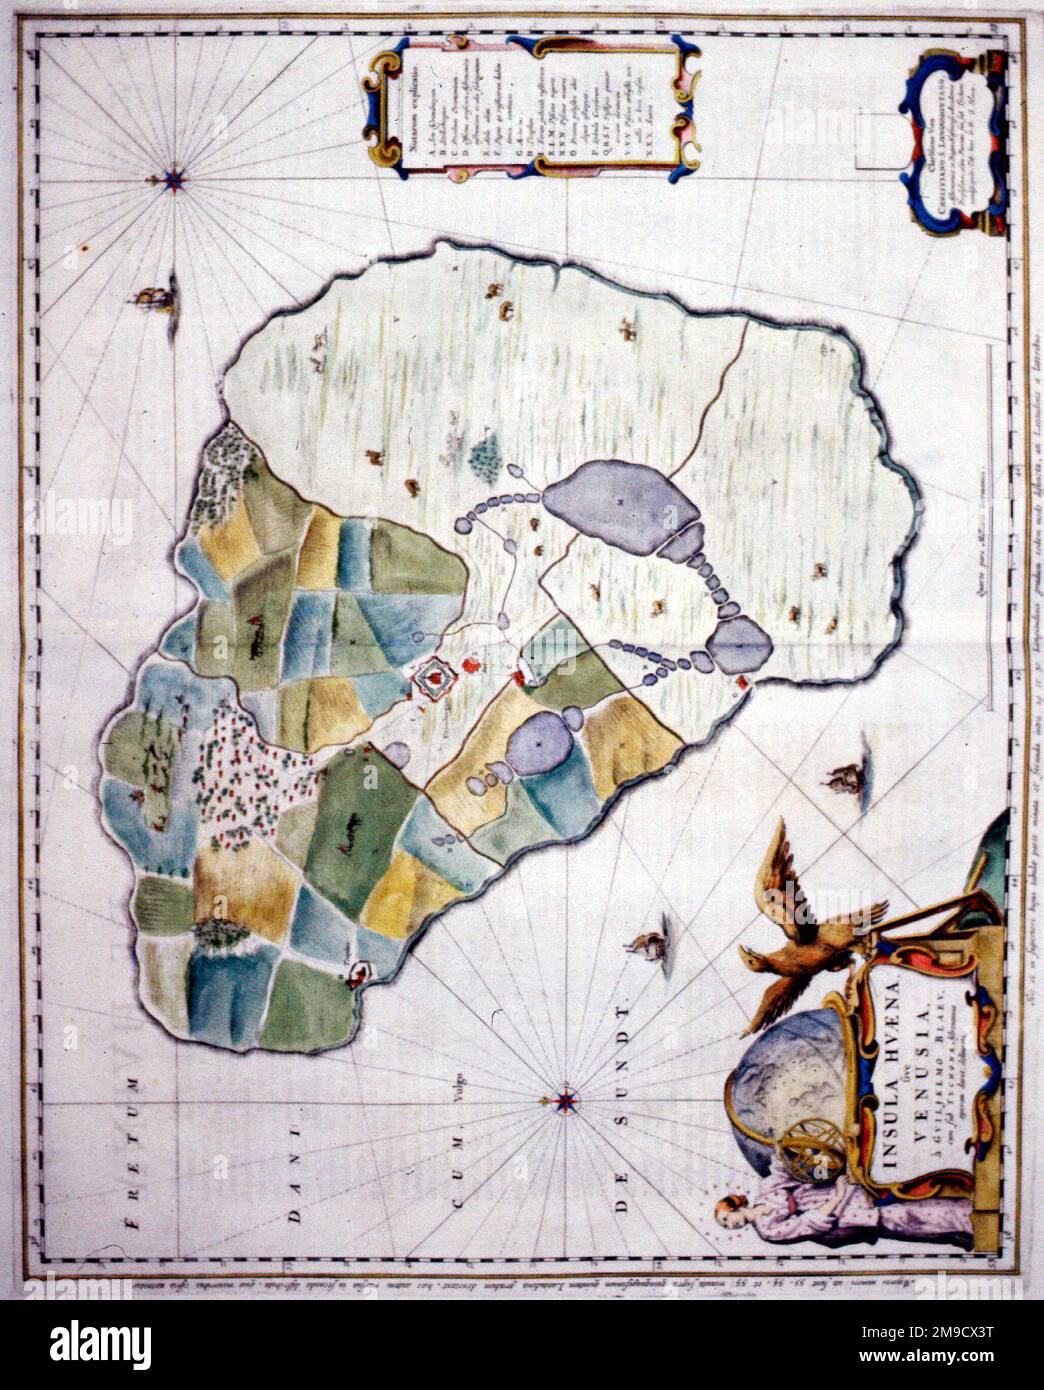 Mappa del 17th ° secolo dell'isola di Hven, Danimarca - Insula Hvaena sive Venusia Foto Stock